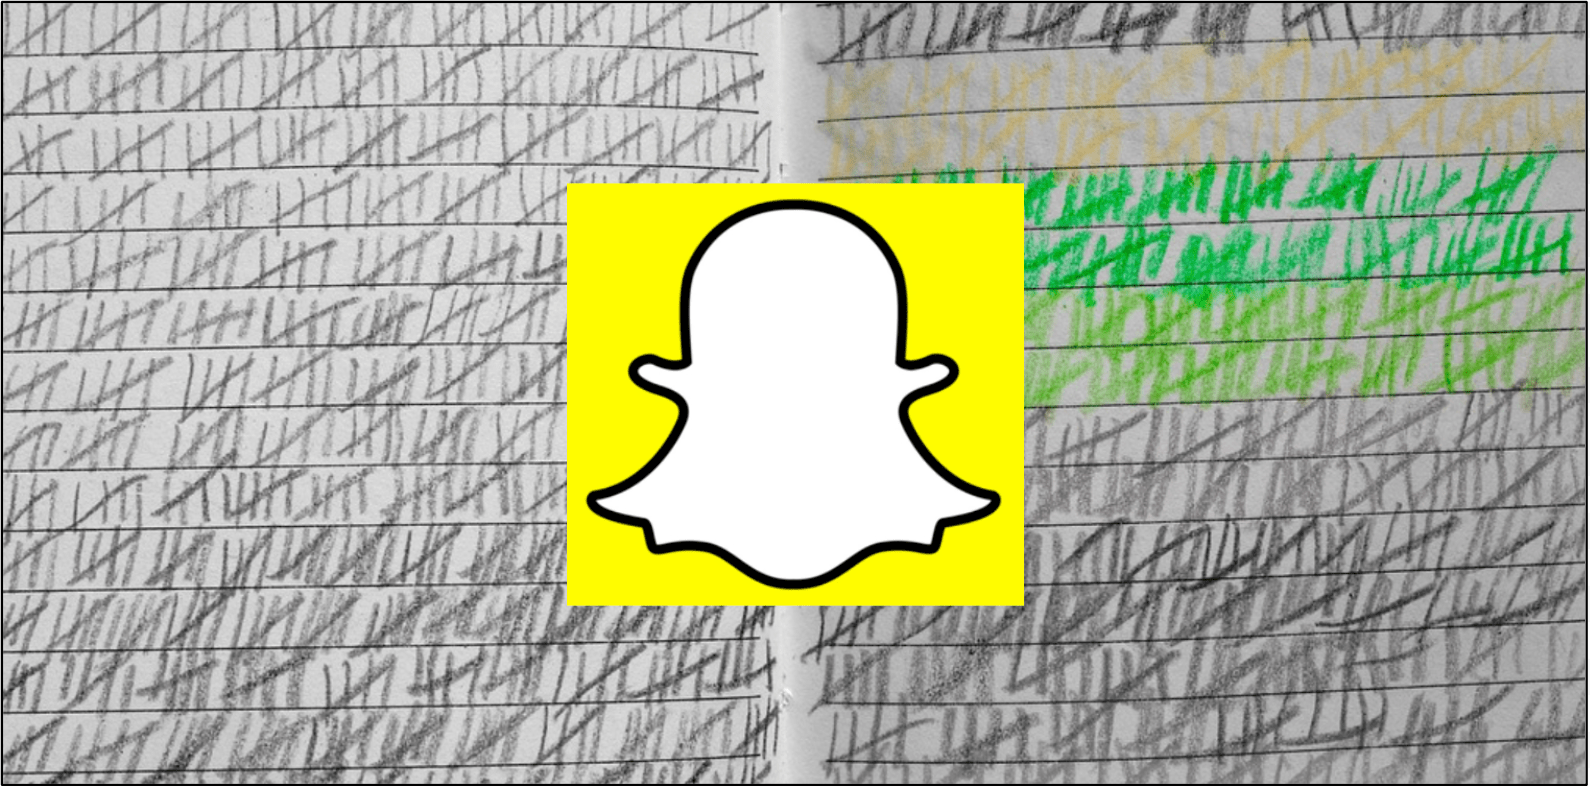 Kuinka Snapchat-pisteet lasketaan